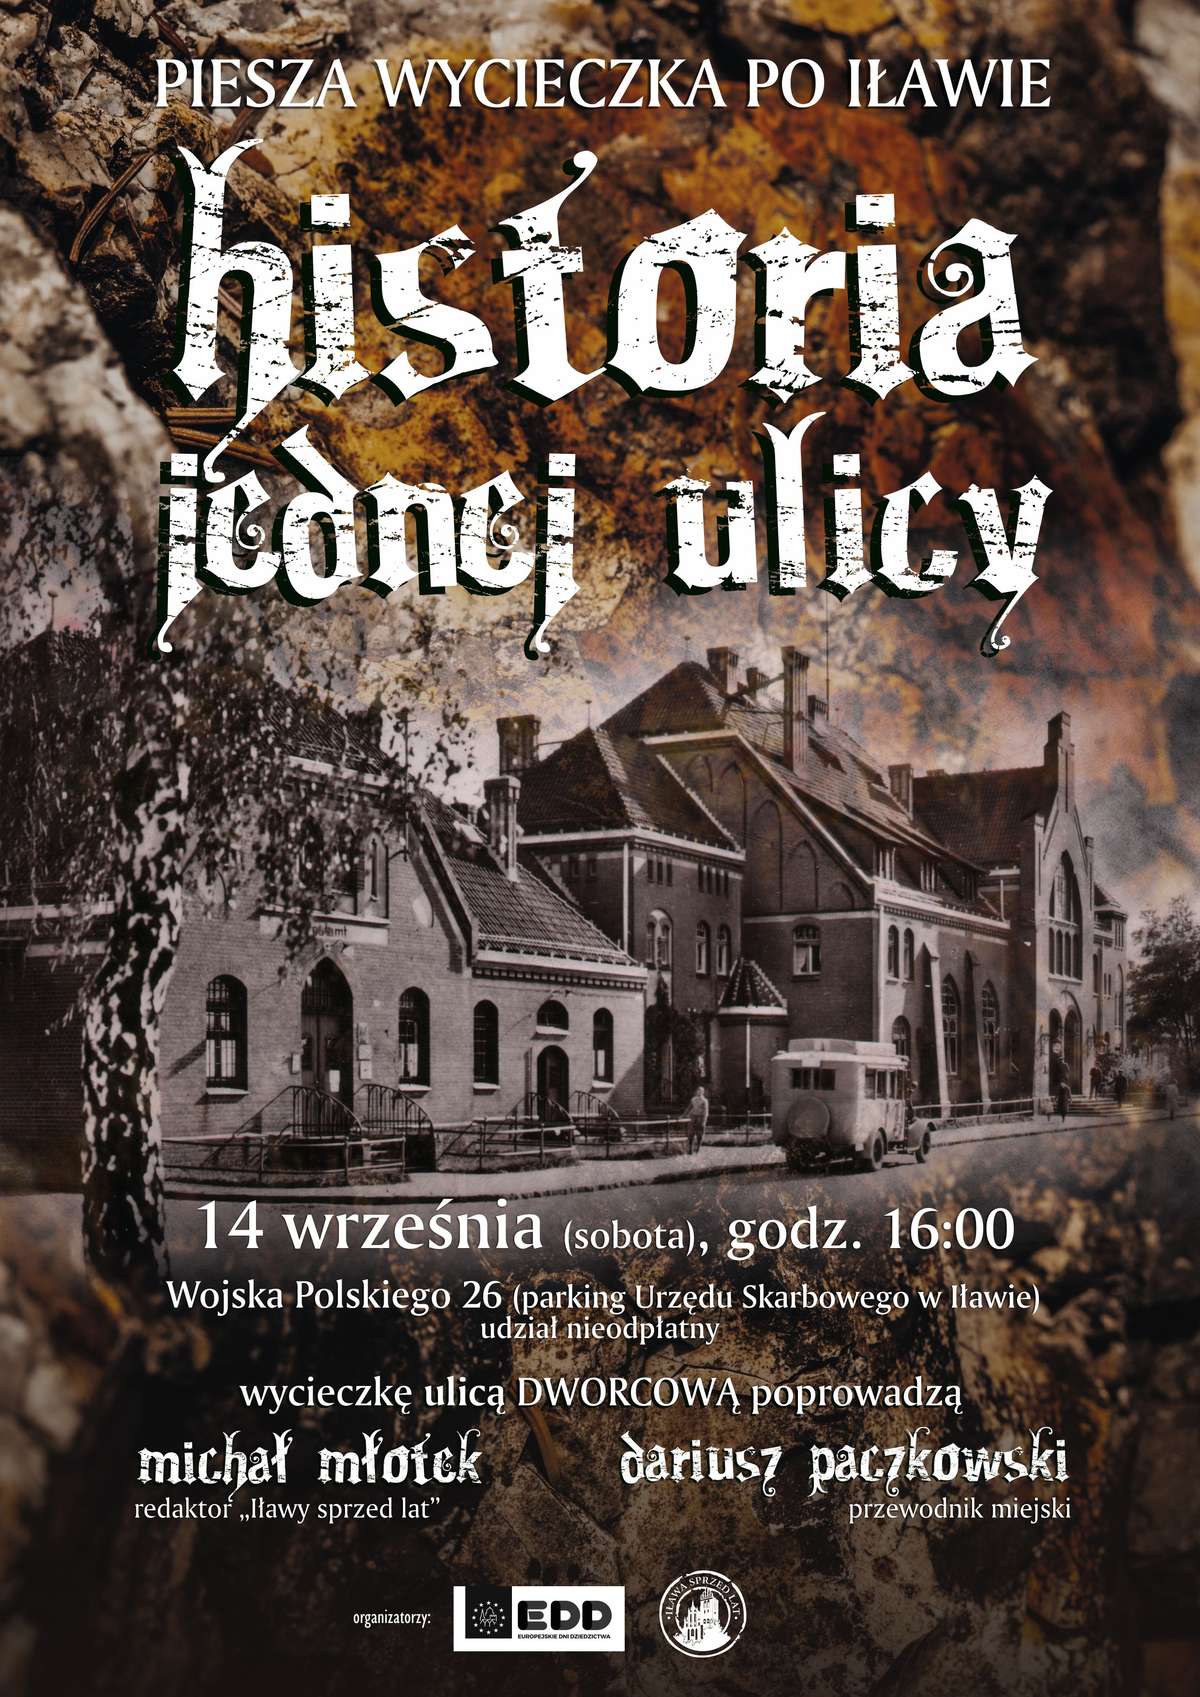 Plakat promujący wycieczkę ulicą Dworcową — kliknij, aby zobaczyć go w całości